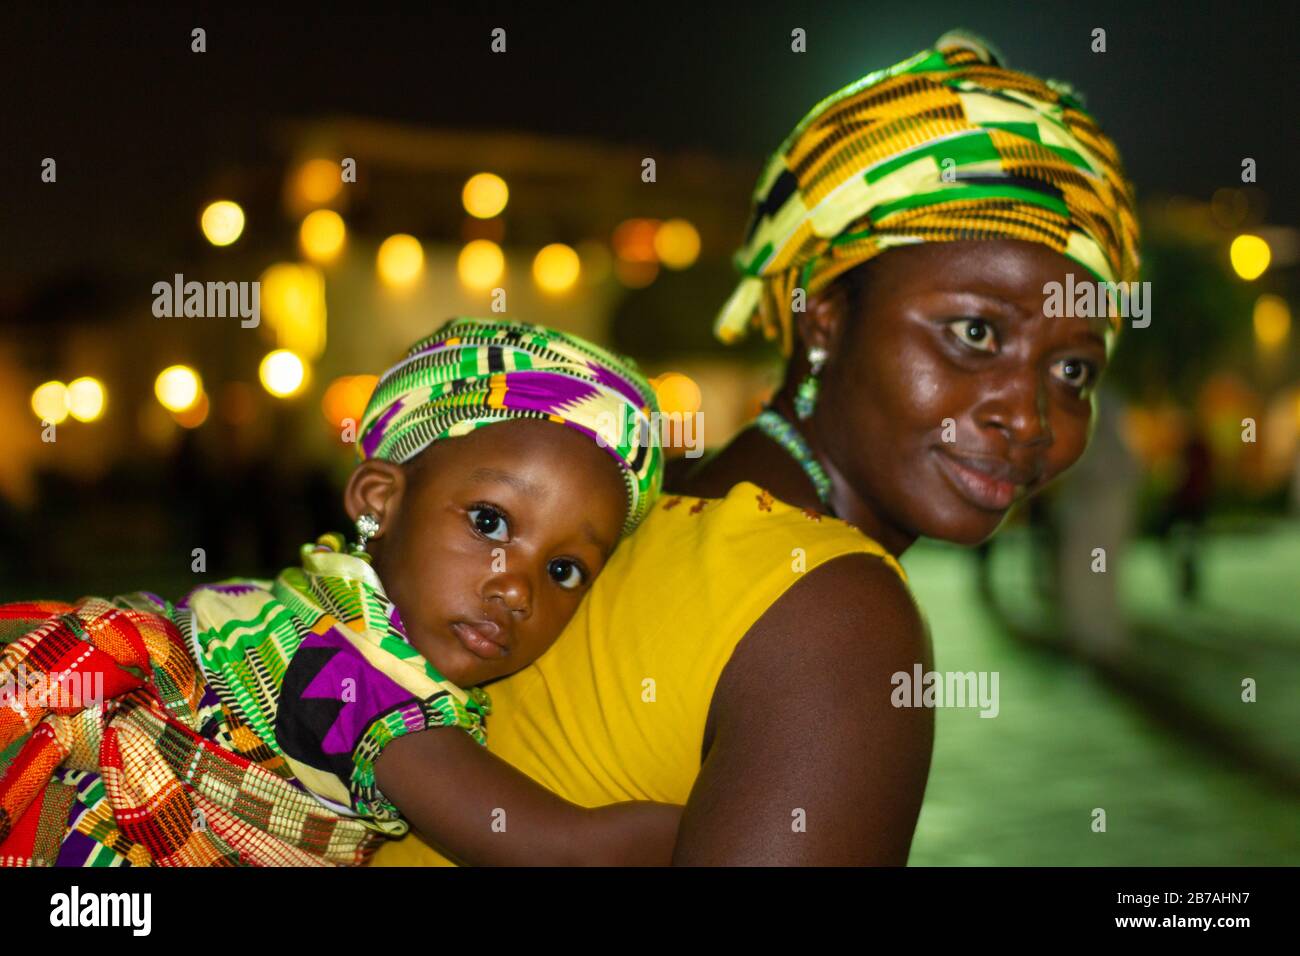 Mère africaine portant sa fille sur son dos dans des costumes traditionnels de tribu africaine avec fond flou Banque D'Images